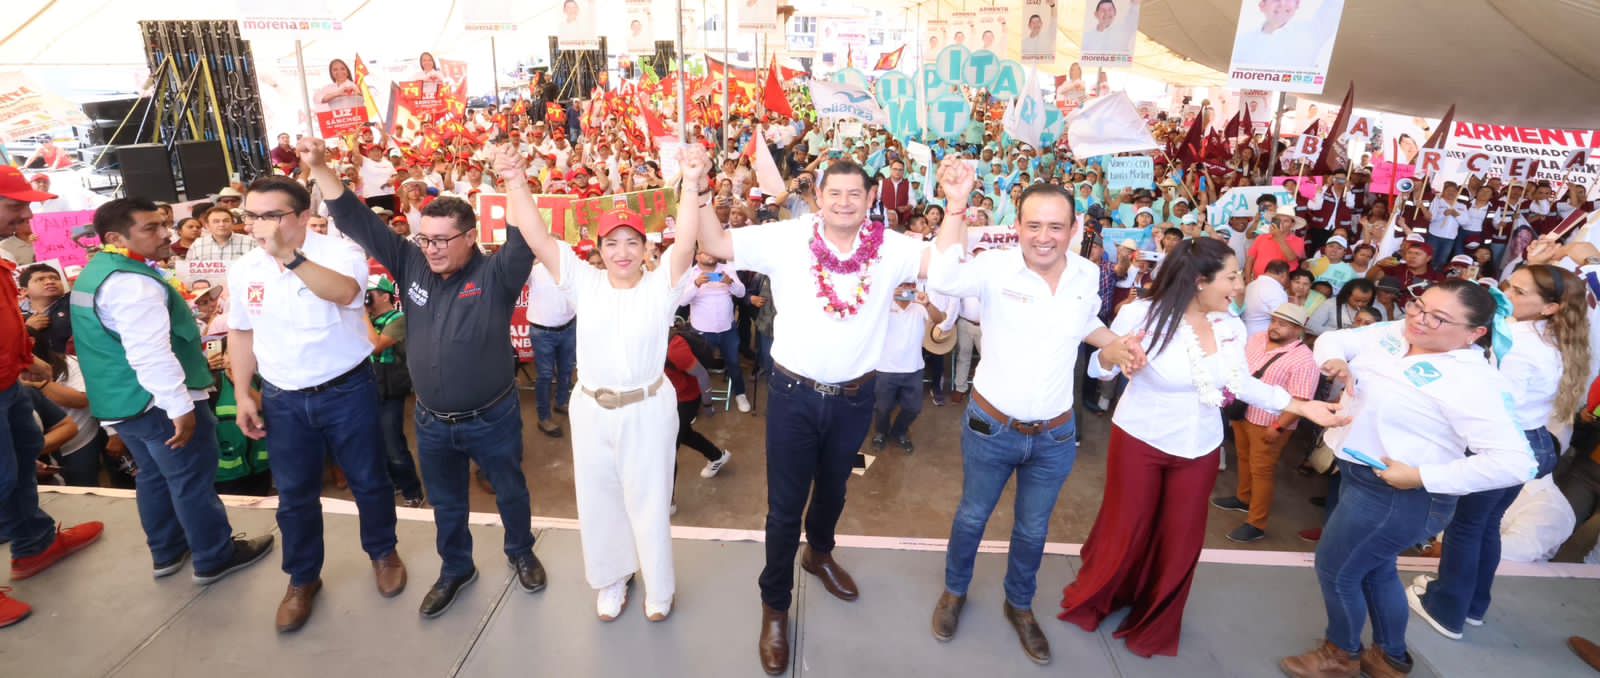 Innovación agrícola en marcha: Alejandro Armenta impulsa agroparques en Puebla